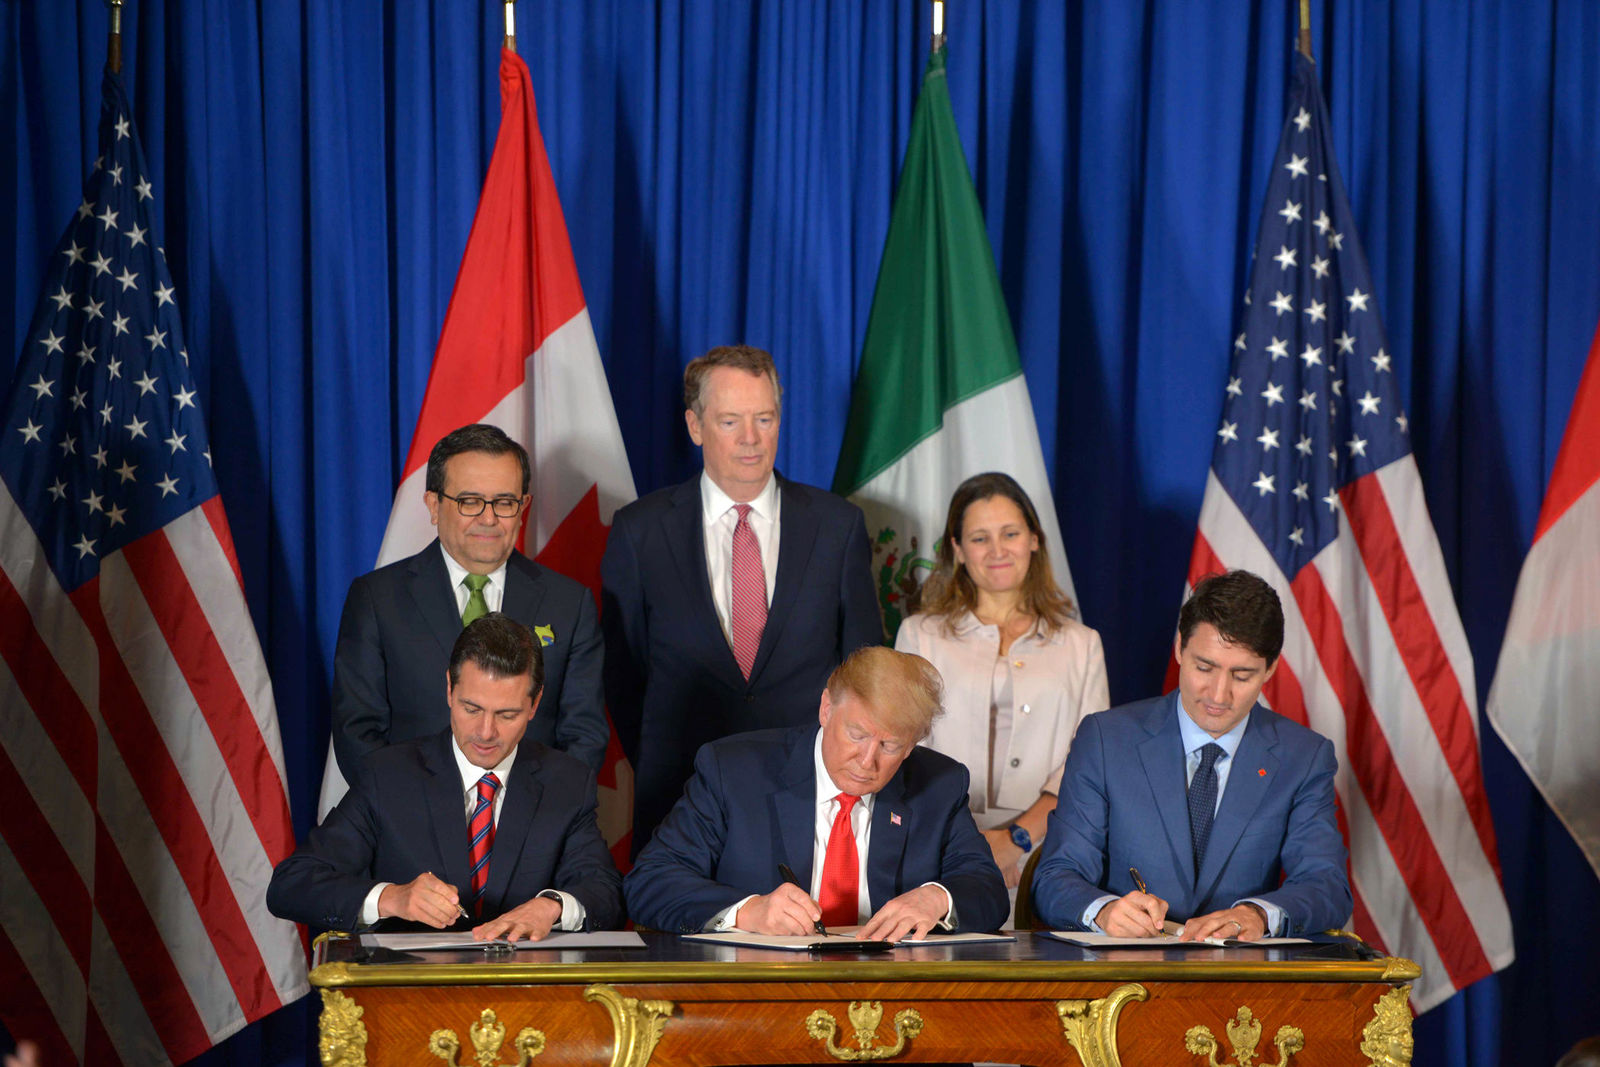 Nuevo. En la imagen se observa a Peña, Trump y Trudeau firmando el nuevo tratado.